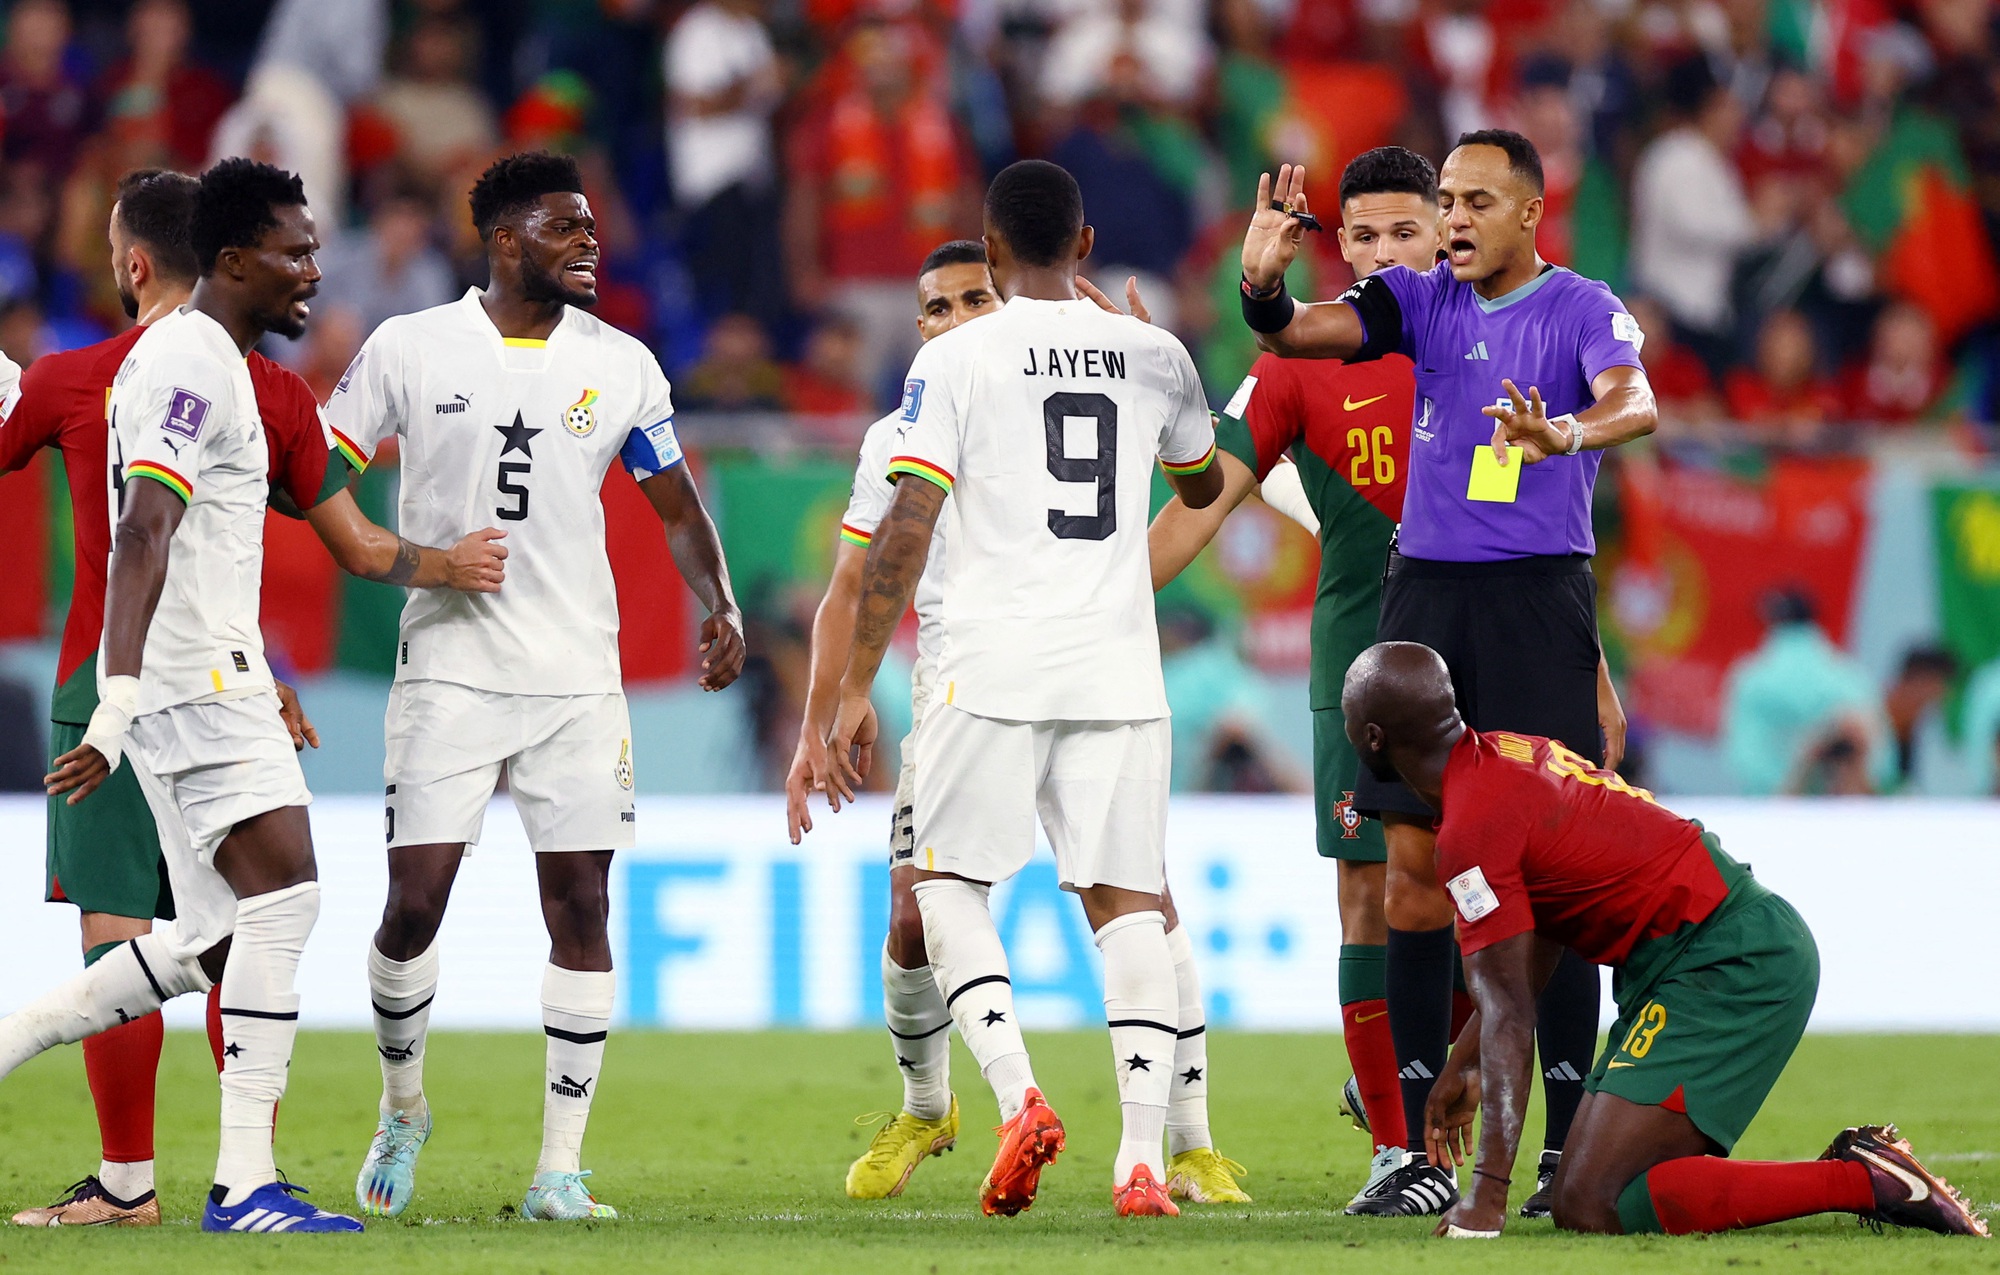 Tỉ số Ghana-Uruguay: Trận đấu giữa Ghana và Uruguay năm 2010 đã trở thành một trong những trận cầu kinh điển nhất trong lịch sử của World Cup. Năm 2024, chúng tôi cập nhật cho bạn tỉ số cuối cùng của trận đấu đầy kịch tính này cùng với những hình ảnh đầy cảm xúc và những khoảnh khắc đáng nhớ.